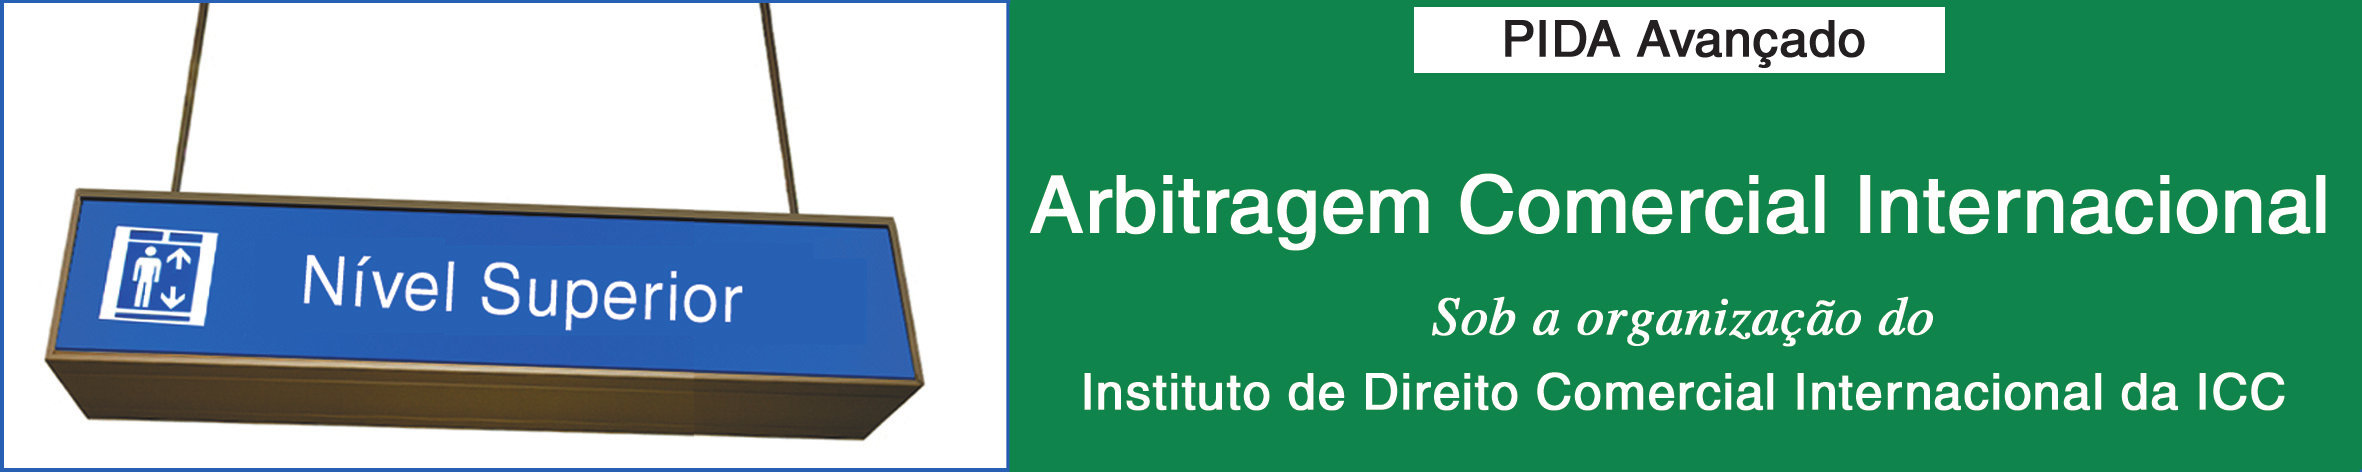 5 CNB horas* Aprofundar seu conhecimento sobre arbitragem ICC através de: simulação de um procedimento arbitral envolvendo situações